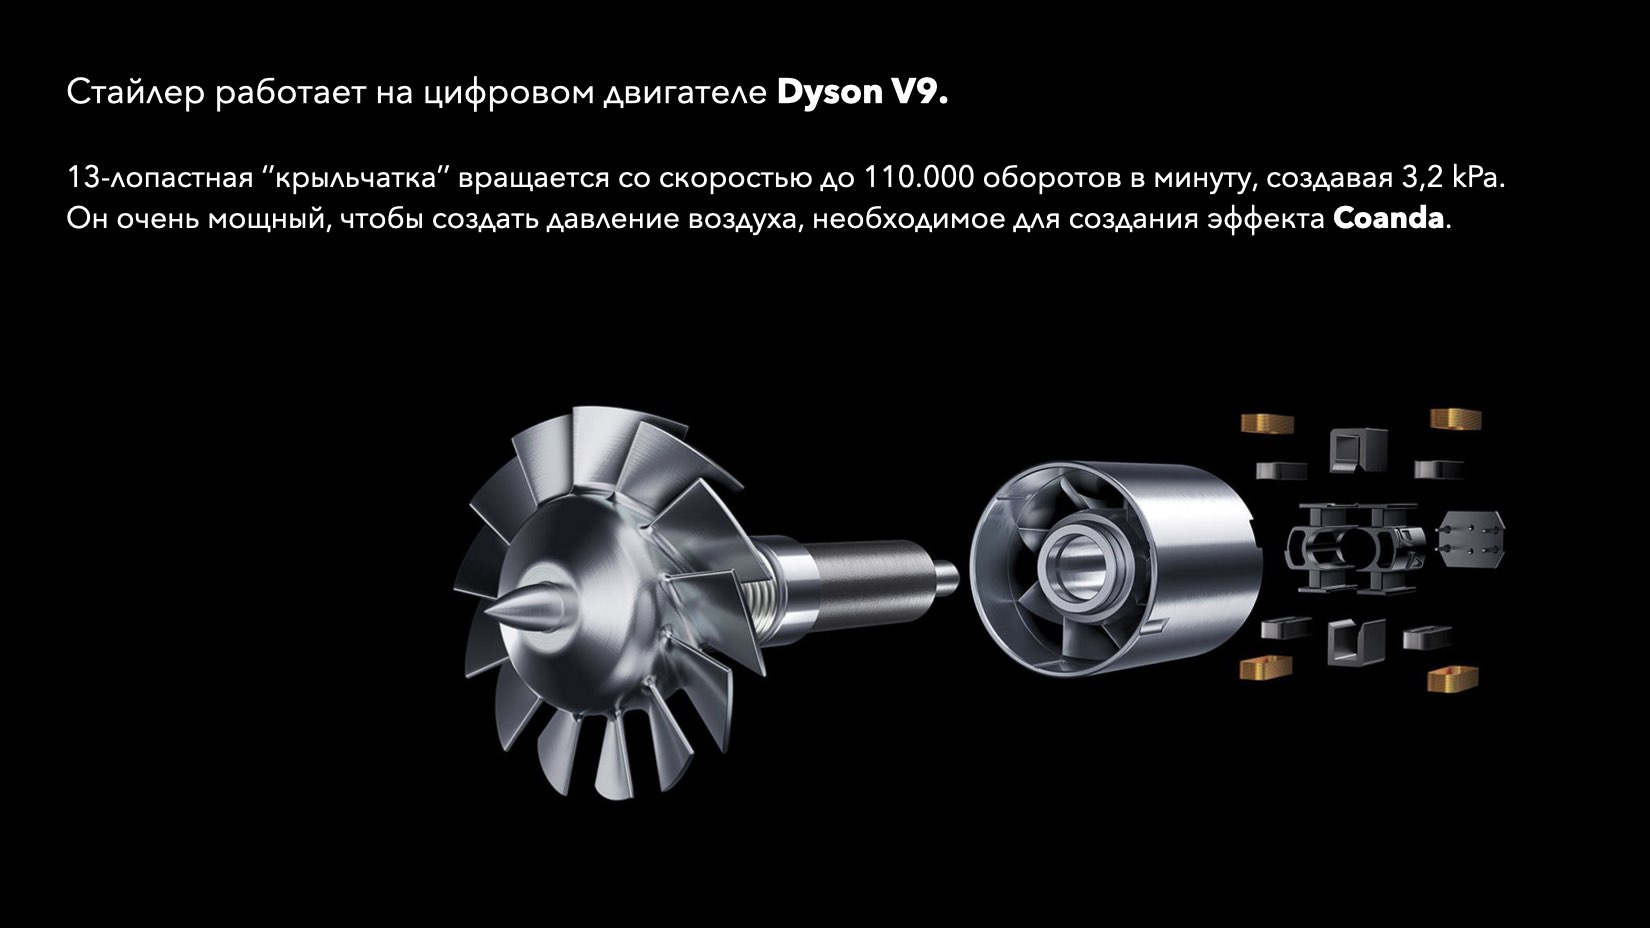 Инструкция по применению дайсона. Dyson hs01 мотор. Dyson Airwrap hs01 Motor. Dyson мощный двигатель. Мотор на стайлер Дайсон.